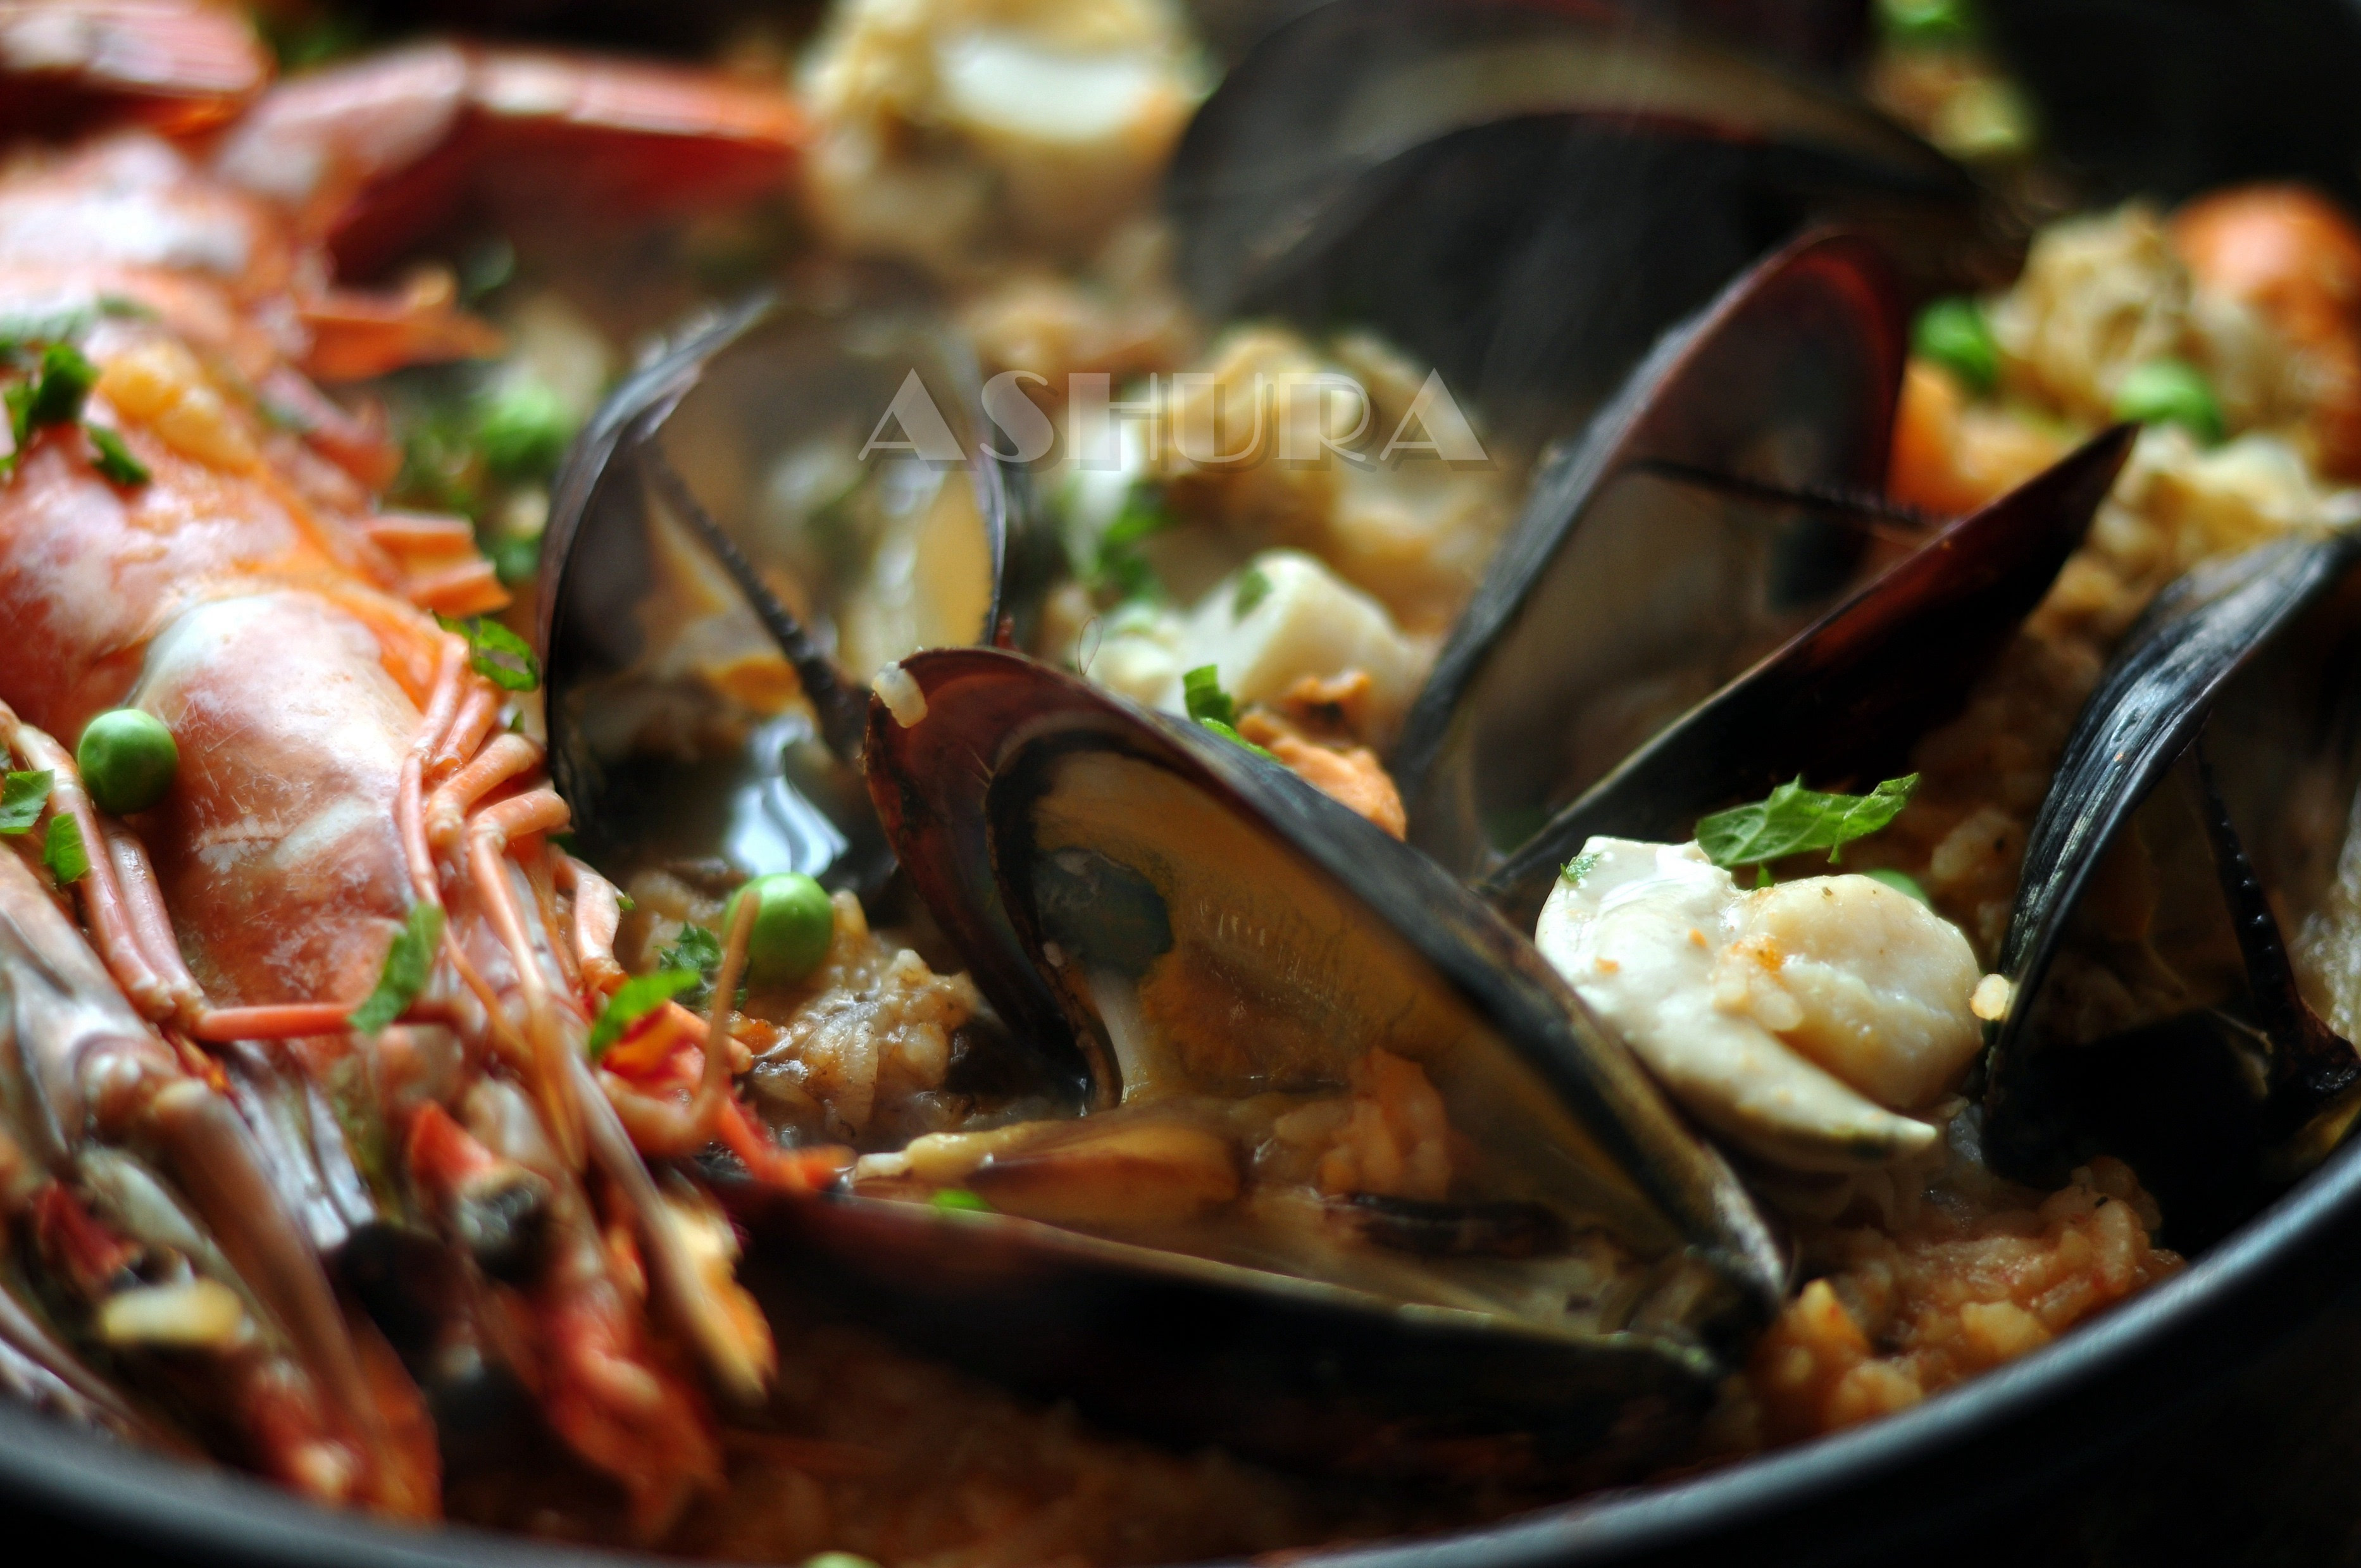 西班牙海鲜饭（paella） 的做法_西班牙海鲜饭（paella） 怎么做_西班牙海鲜饭（paella） 的家常做法_xiang【心食谱】